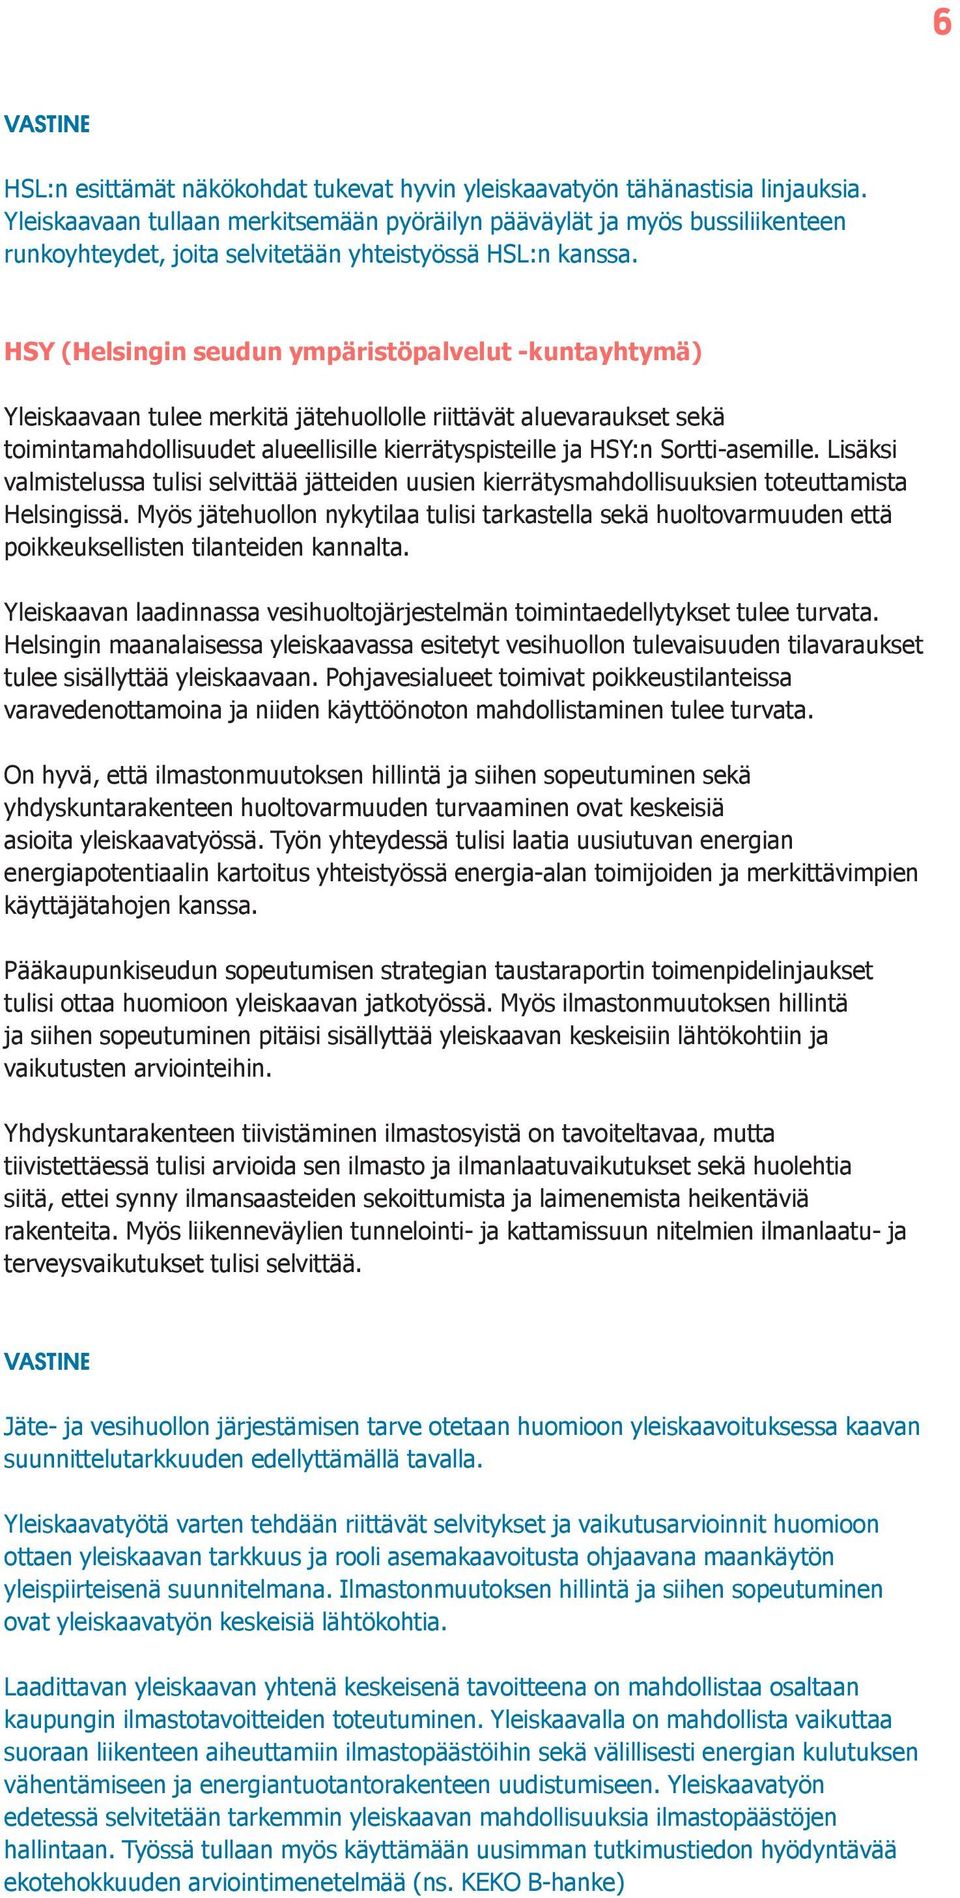 HSY (Helsingin seudun ympäristöpalvelut -kuntayhtymä) Yleiskaavaan tulee merkitä jätehuollolle riittävät aluevaraukset sekä toimintamahdollisuudet alueellisille kierrätyspisteille ja HSY:n